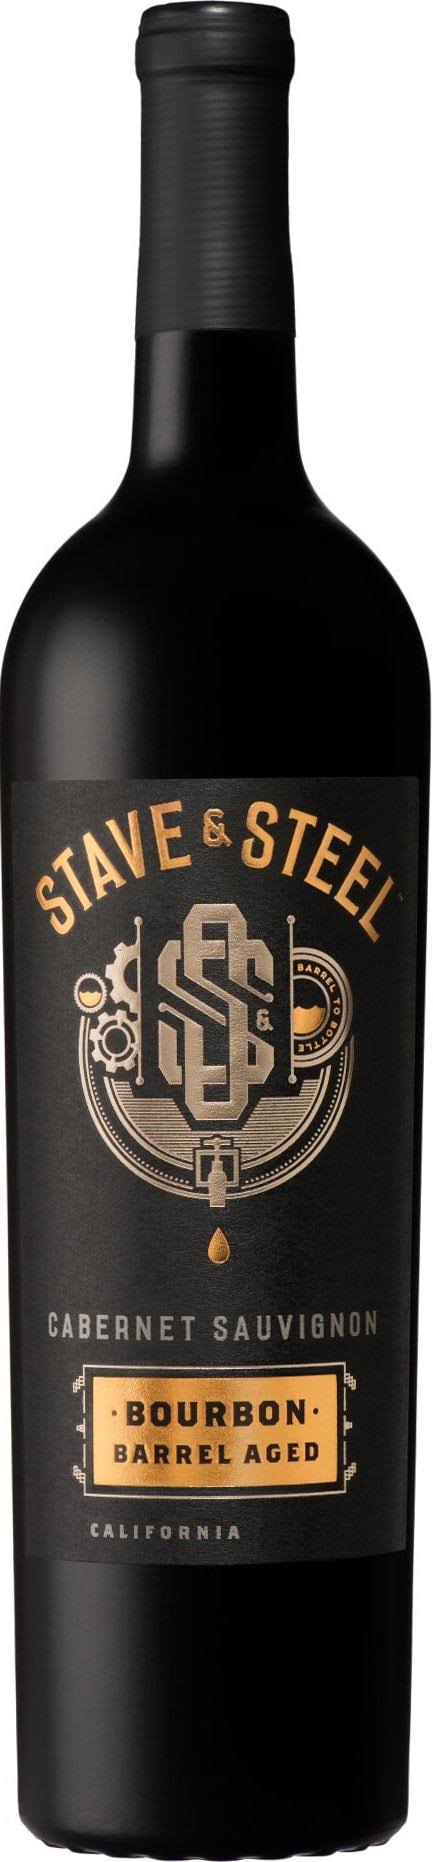 Stave & Steel Cabernet Sauvignon, Paso Robles, 2014 - 750 ml